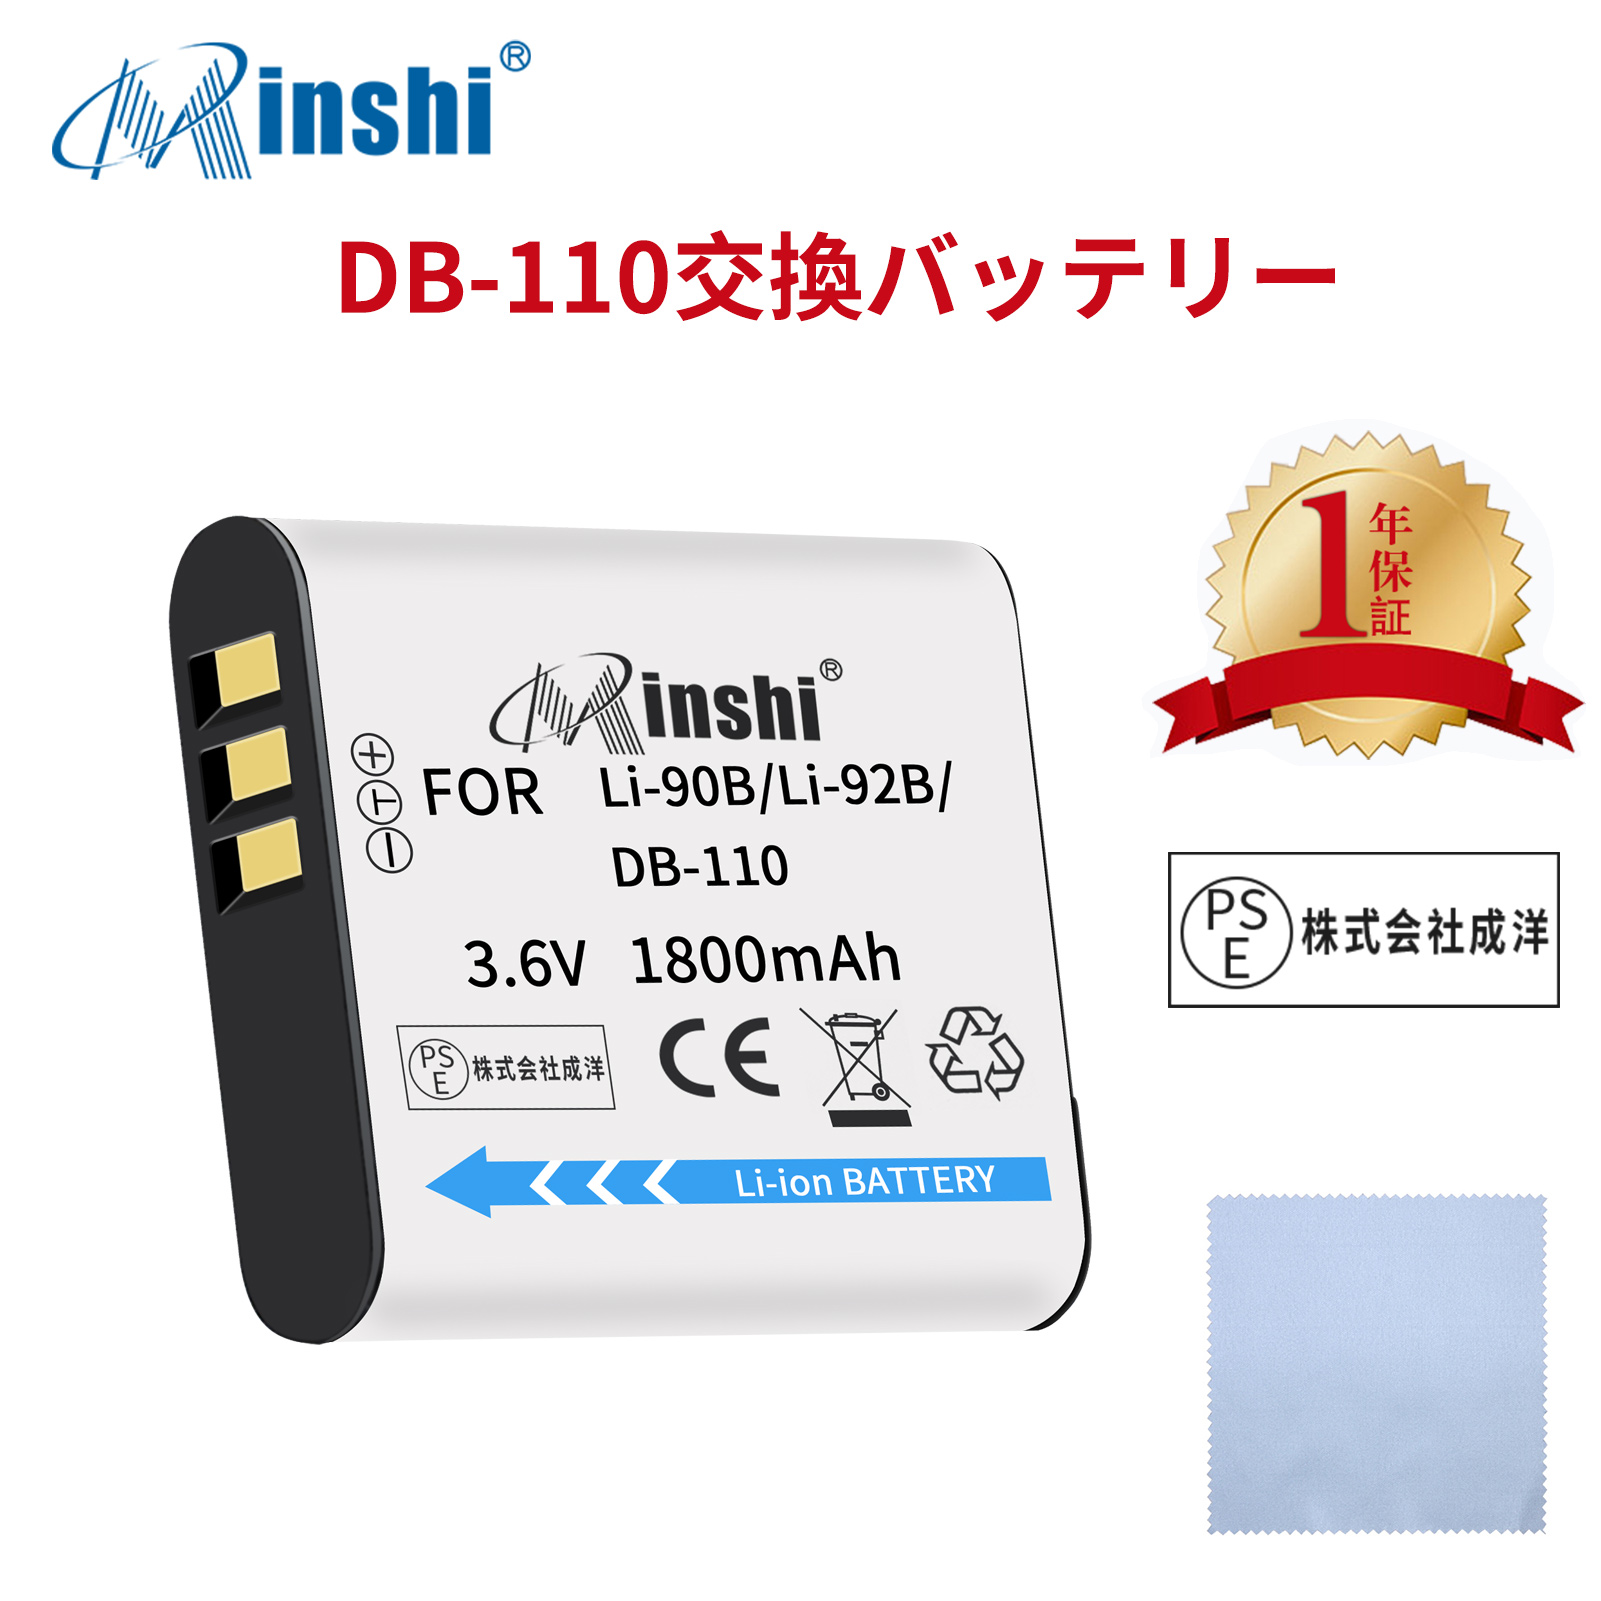 【清潔布ー付】minshi OLYMPUS Stylus SH-2 【1800mAh 3.6V】PSE認定済 高品質LI-92B互換バッテリーWHG